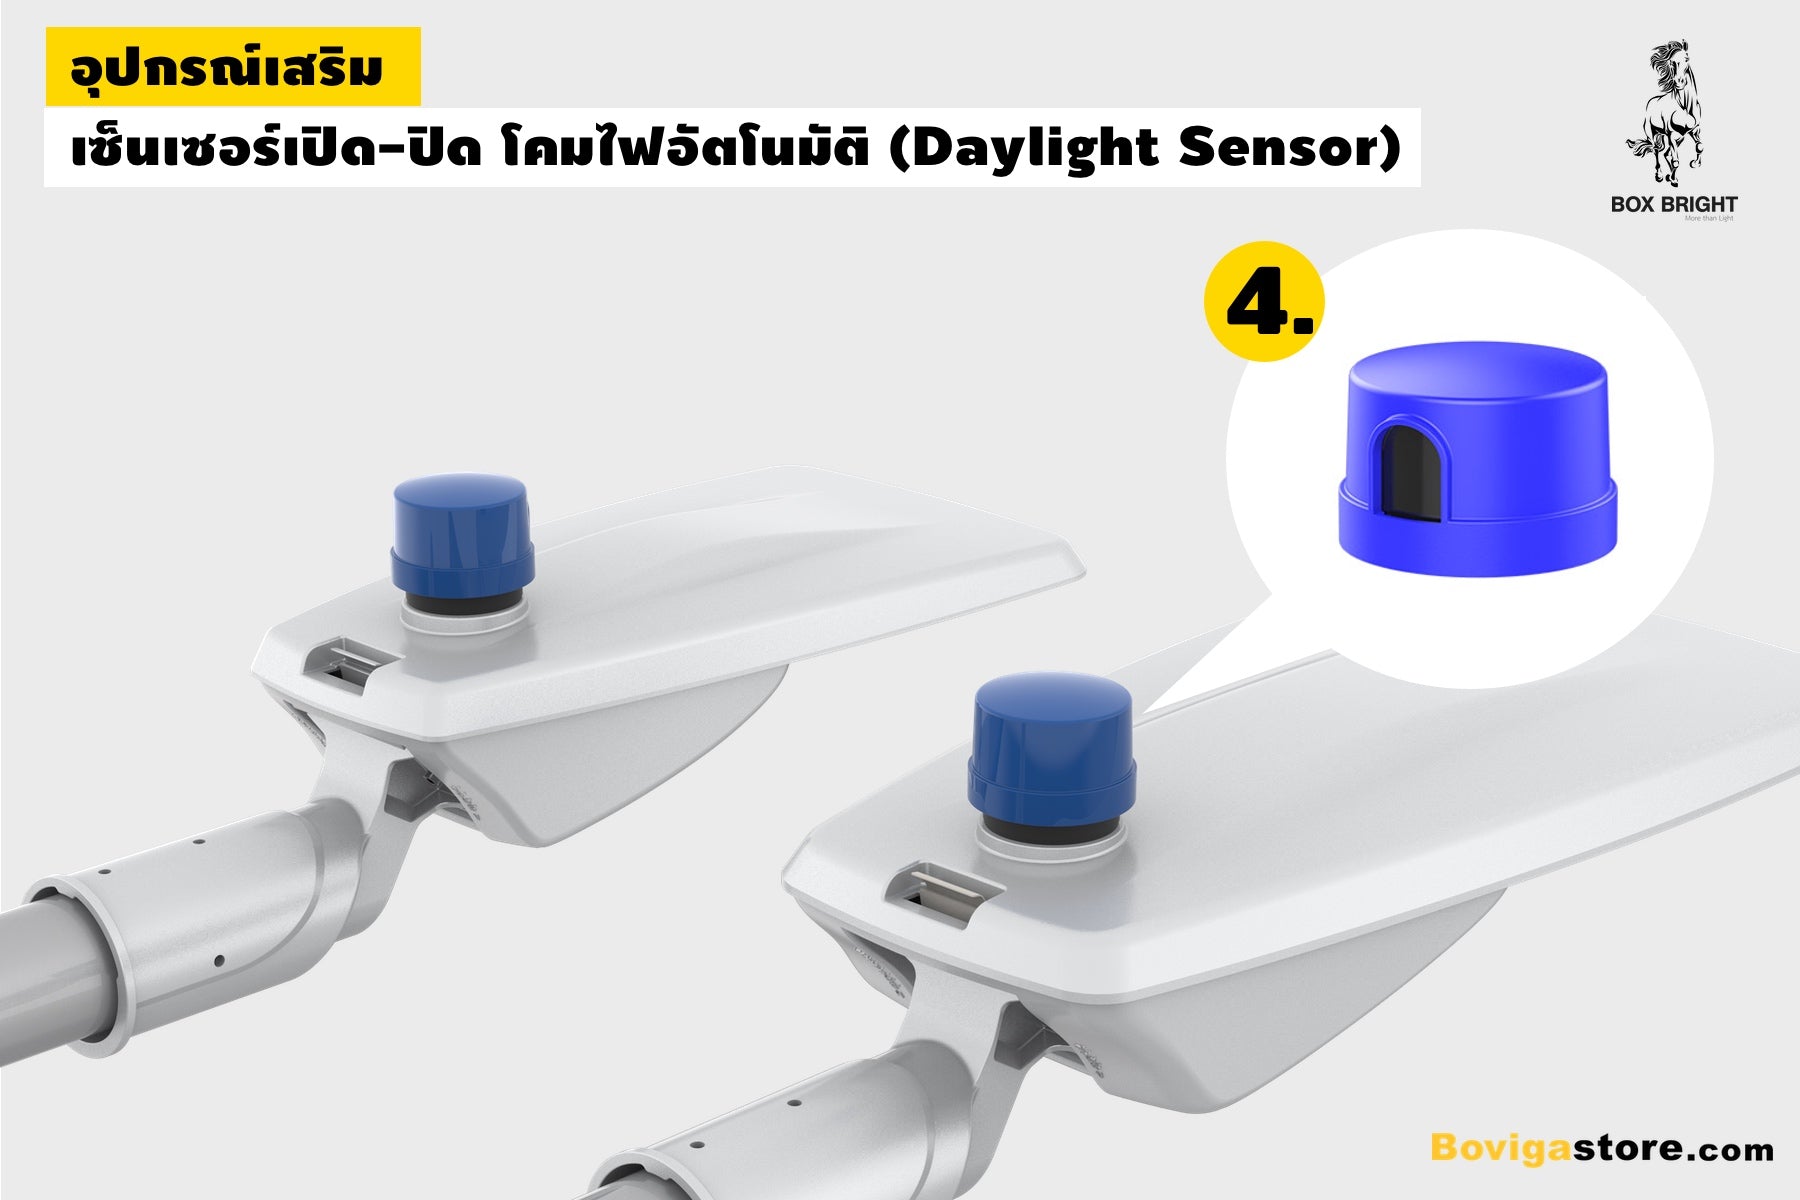 daylight sensor สำหรับตรวจวัดแสงสว่าง ควบคุมการเปิดปิด โคมไฟถนน LED อัตโนมัติ